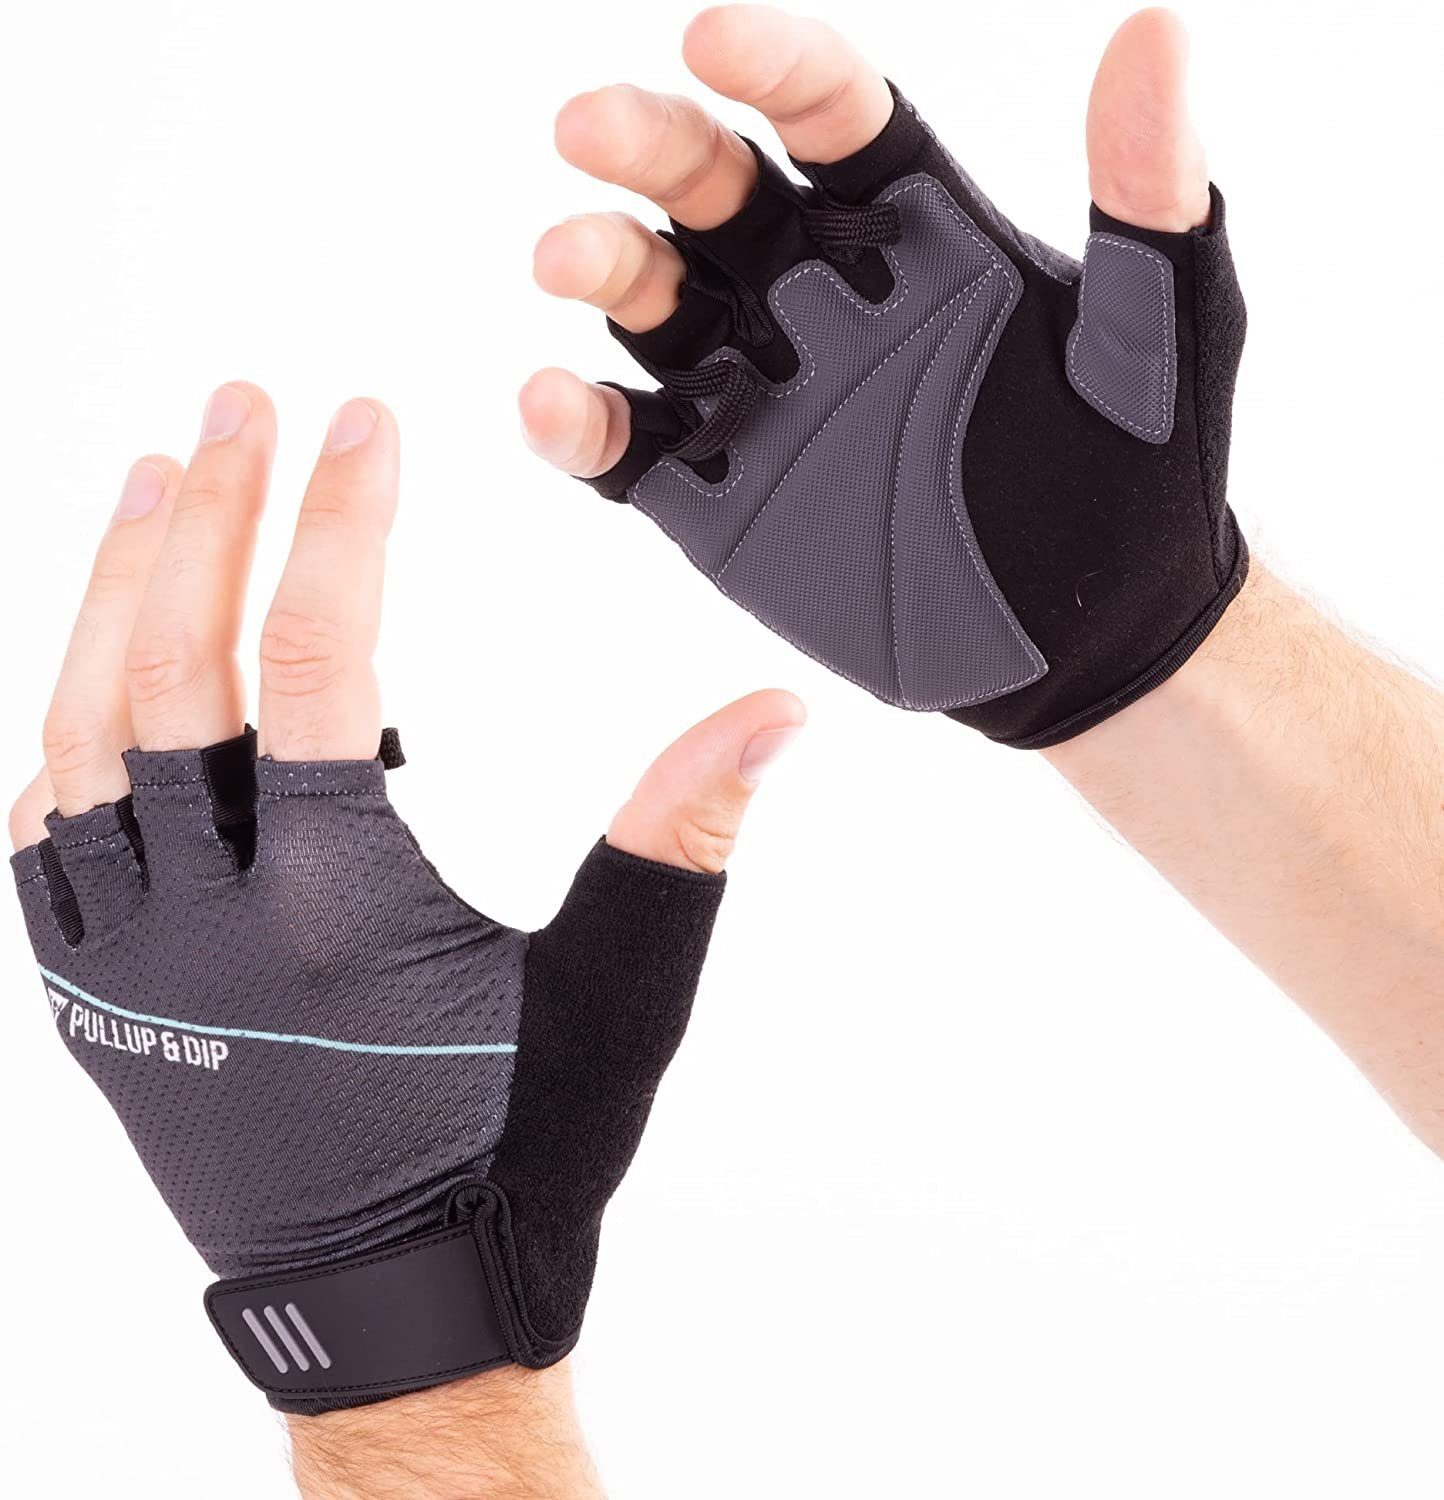 Trainingshandschuhe Pullup Handschuhe, & Dip Trainingshandschuhe Fitness mit Handflächenpolsterung